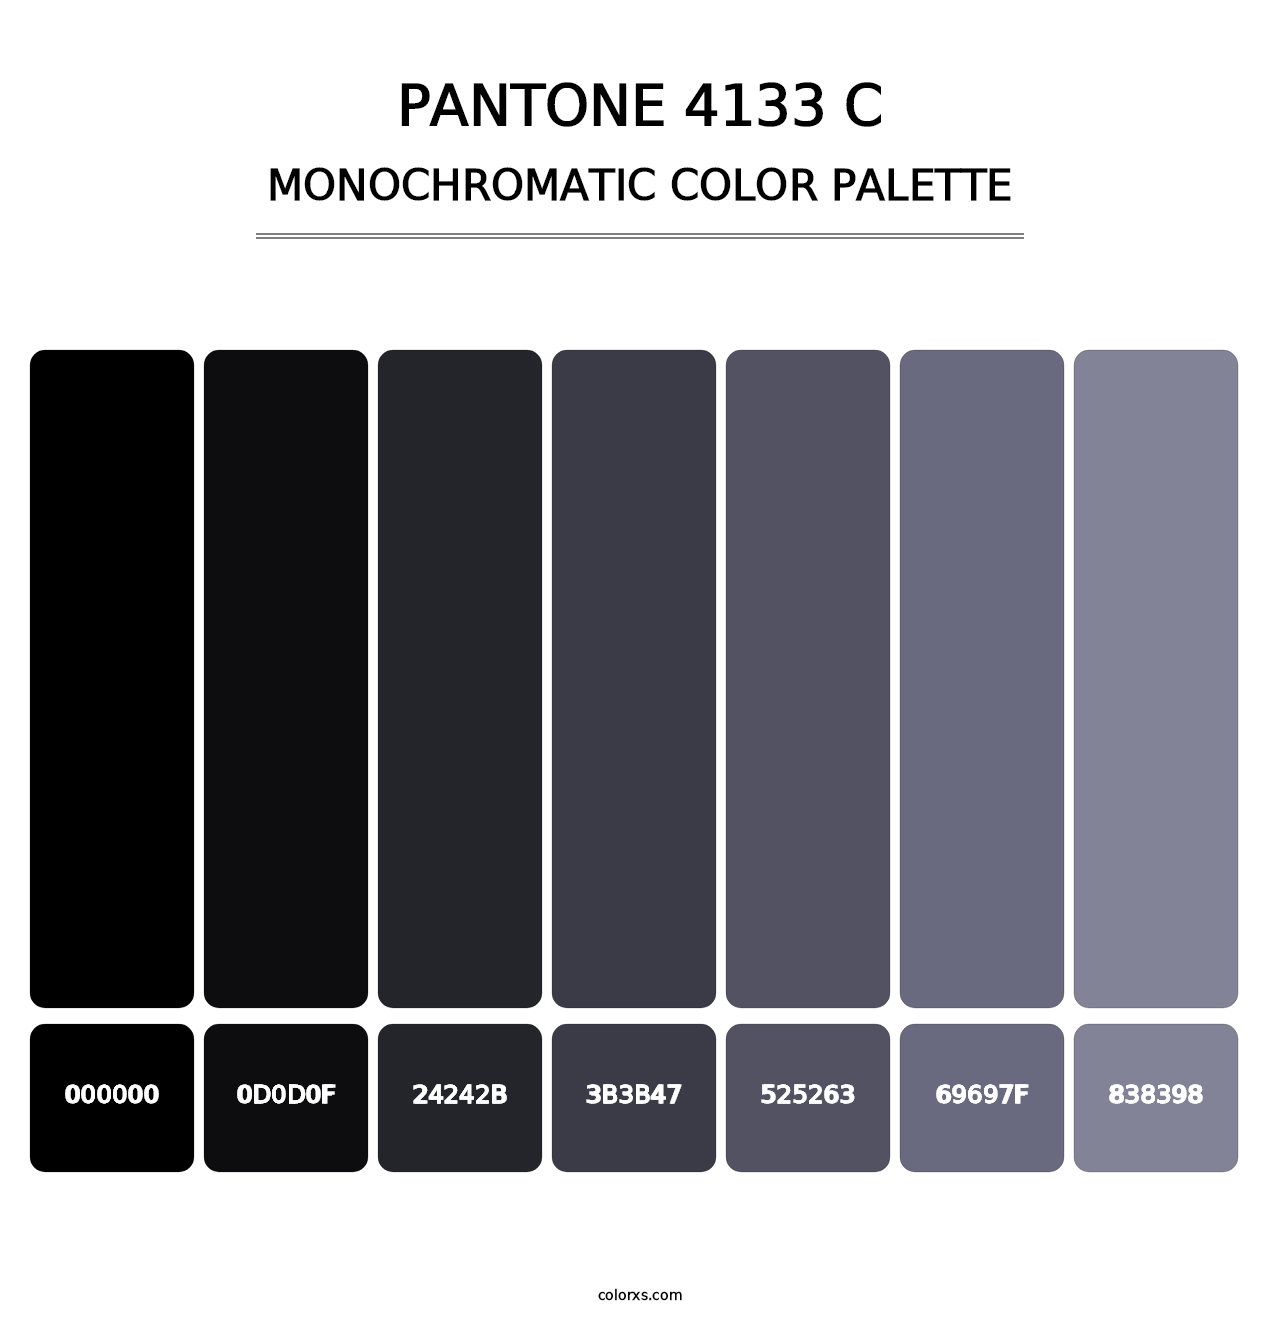 PANTONE 4133 C - Monochromatic Color Palette